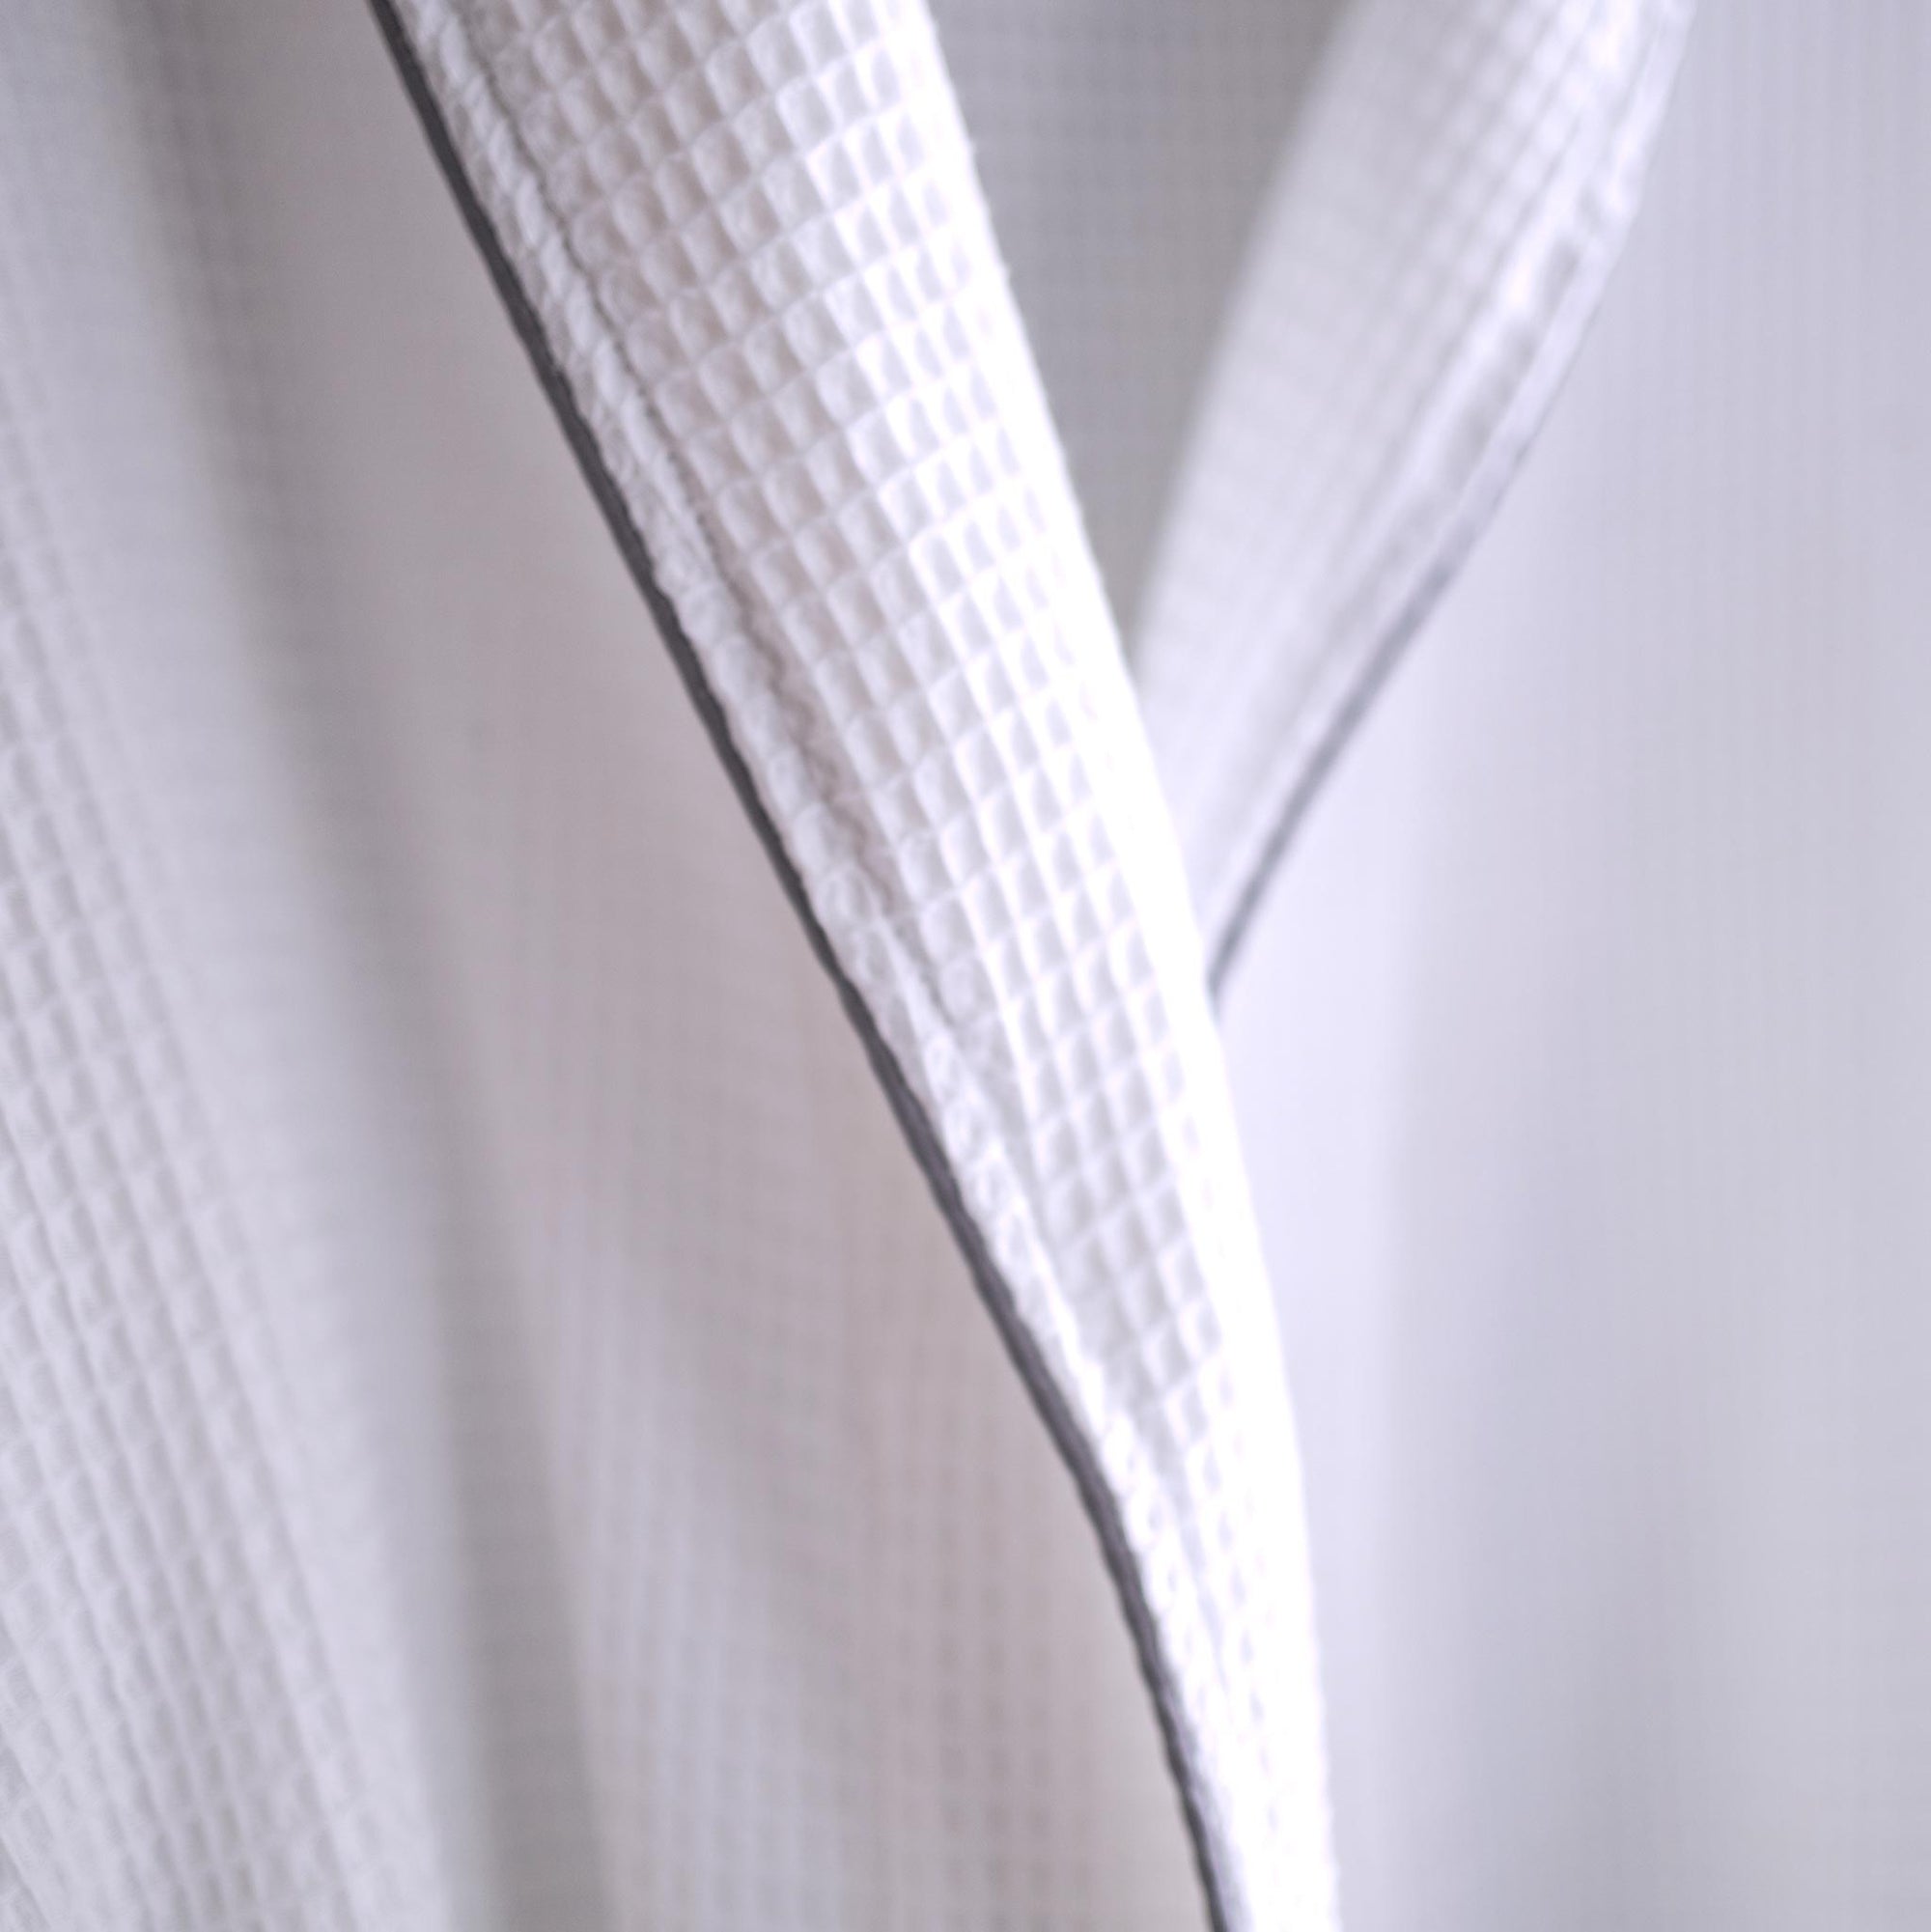 Peignoir unisexe en coton gaufré blanc et gris